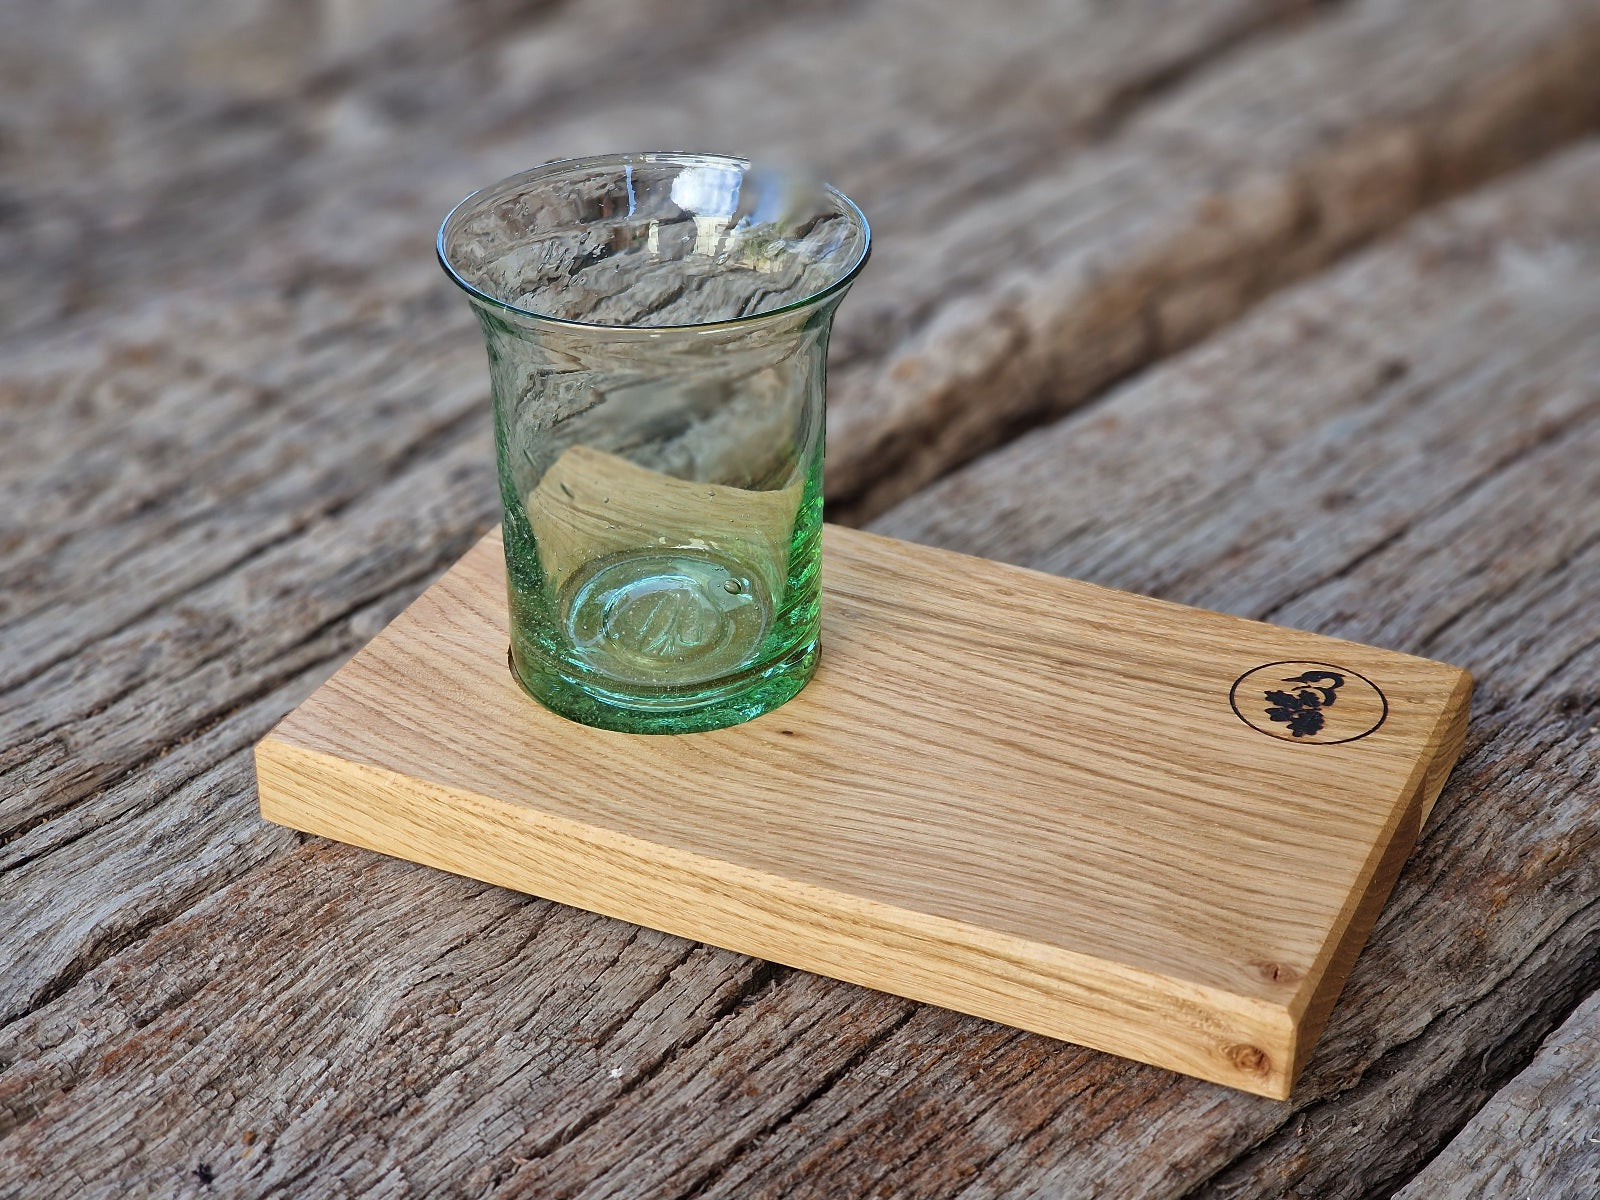 Grünes Wasserglas aus Thüringen, mundgeblasen mit Gispen, auf einem Holz Tablett aus Eiche.